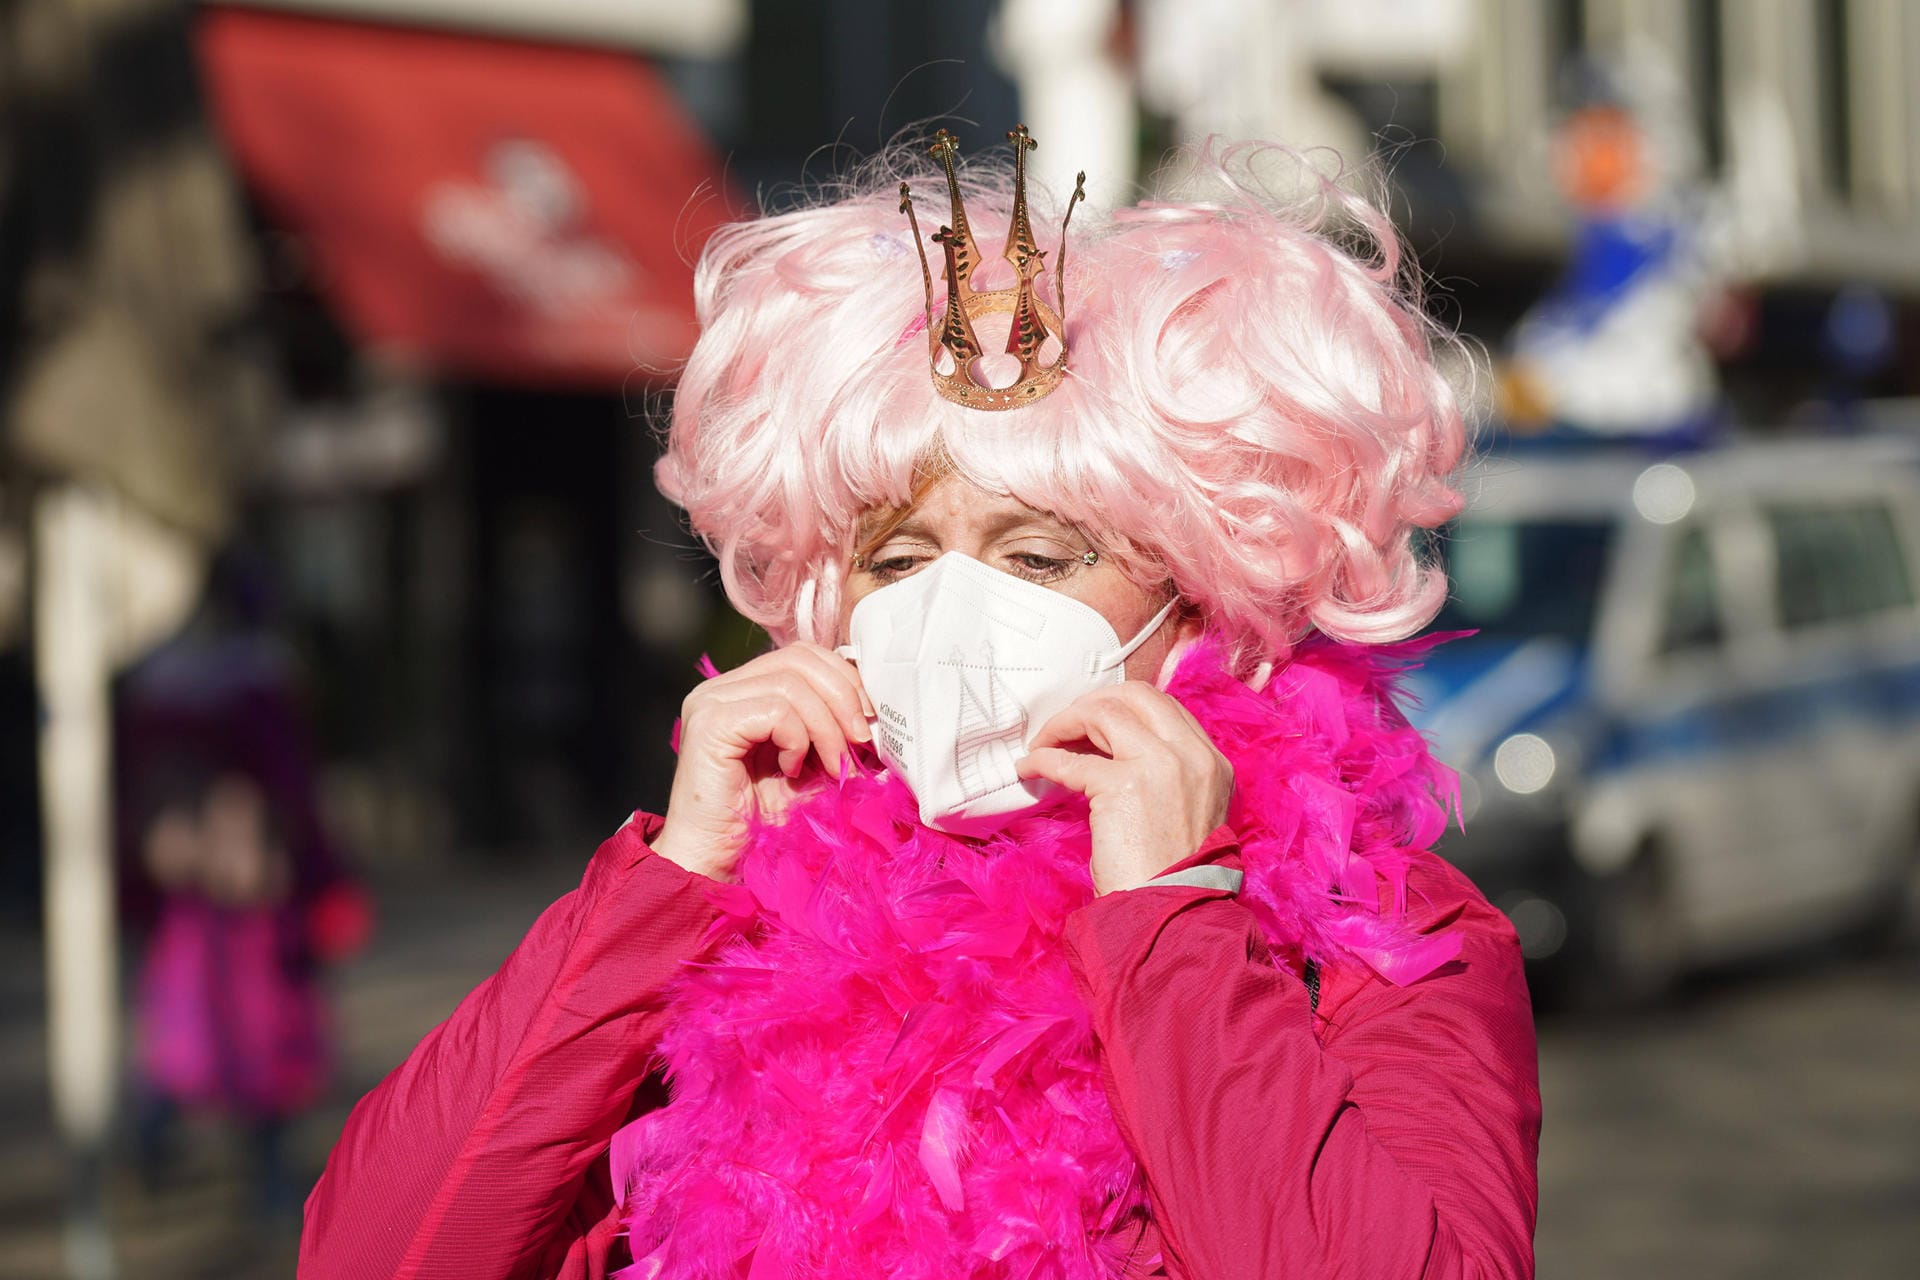 Eine rosarote Prinzessin: Das Kostümtragen ist trotz Pandemie nicht verboten.